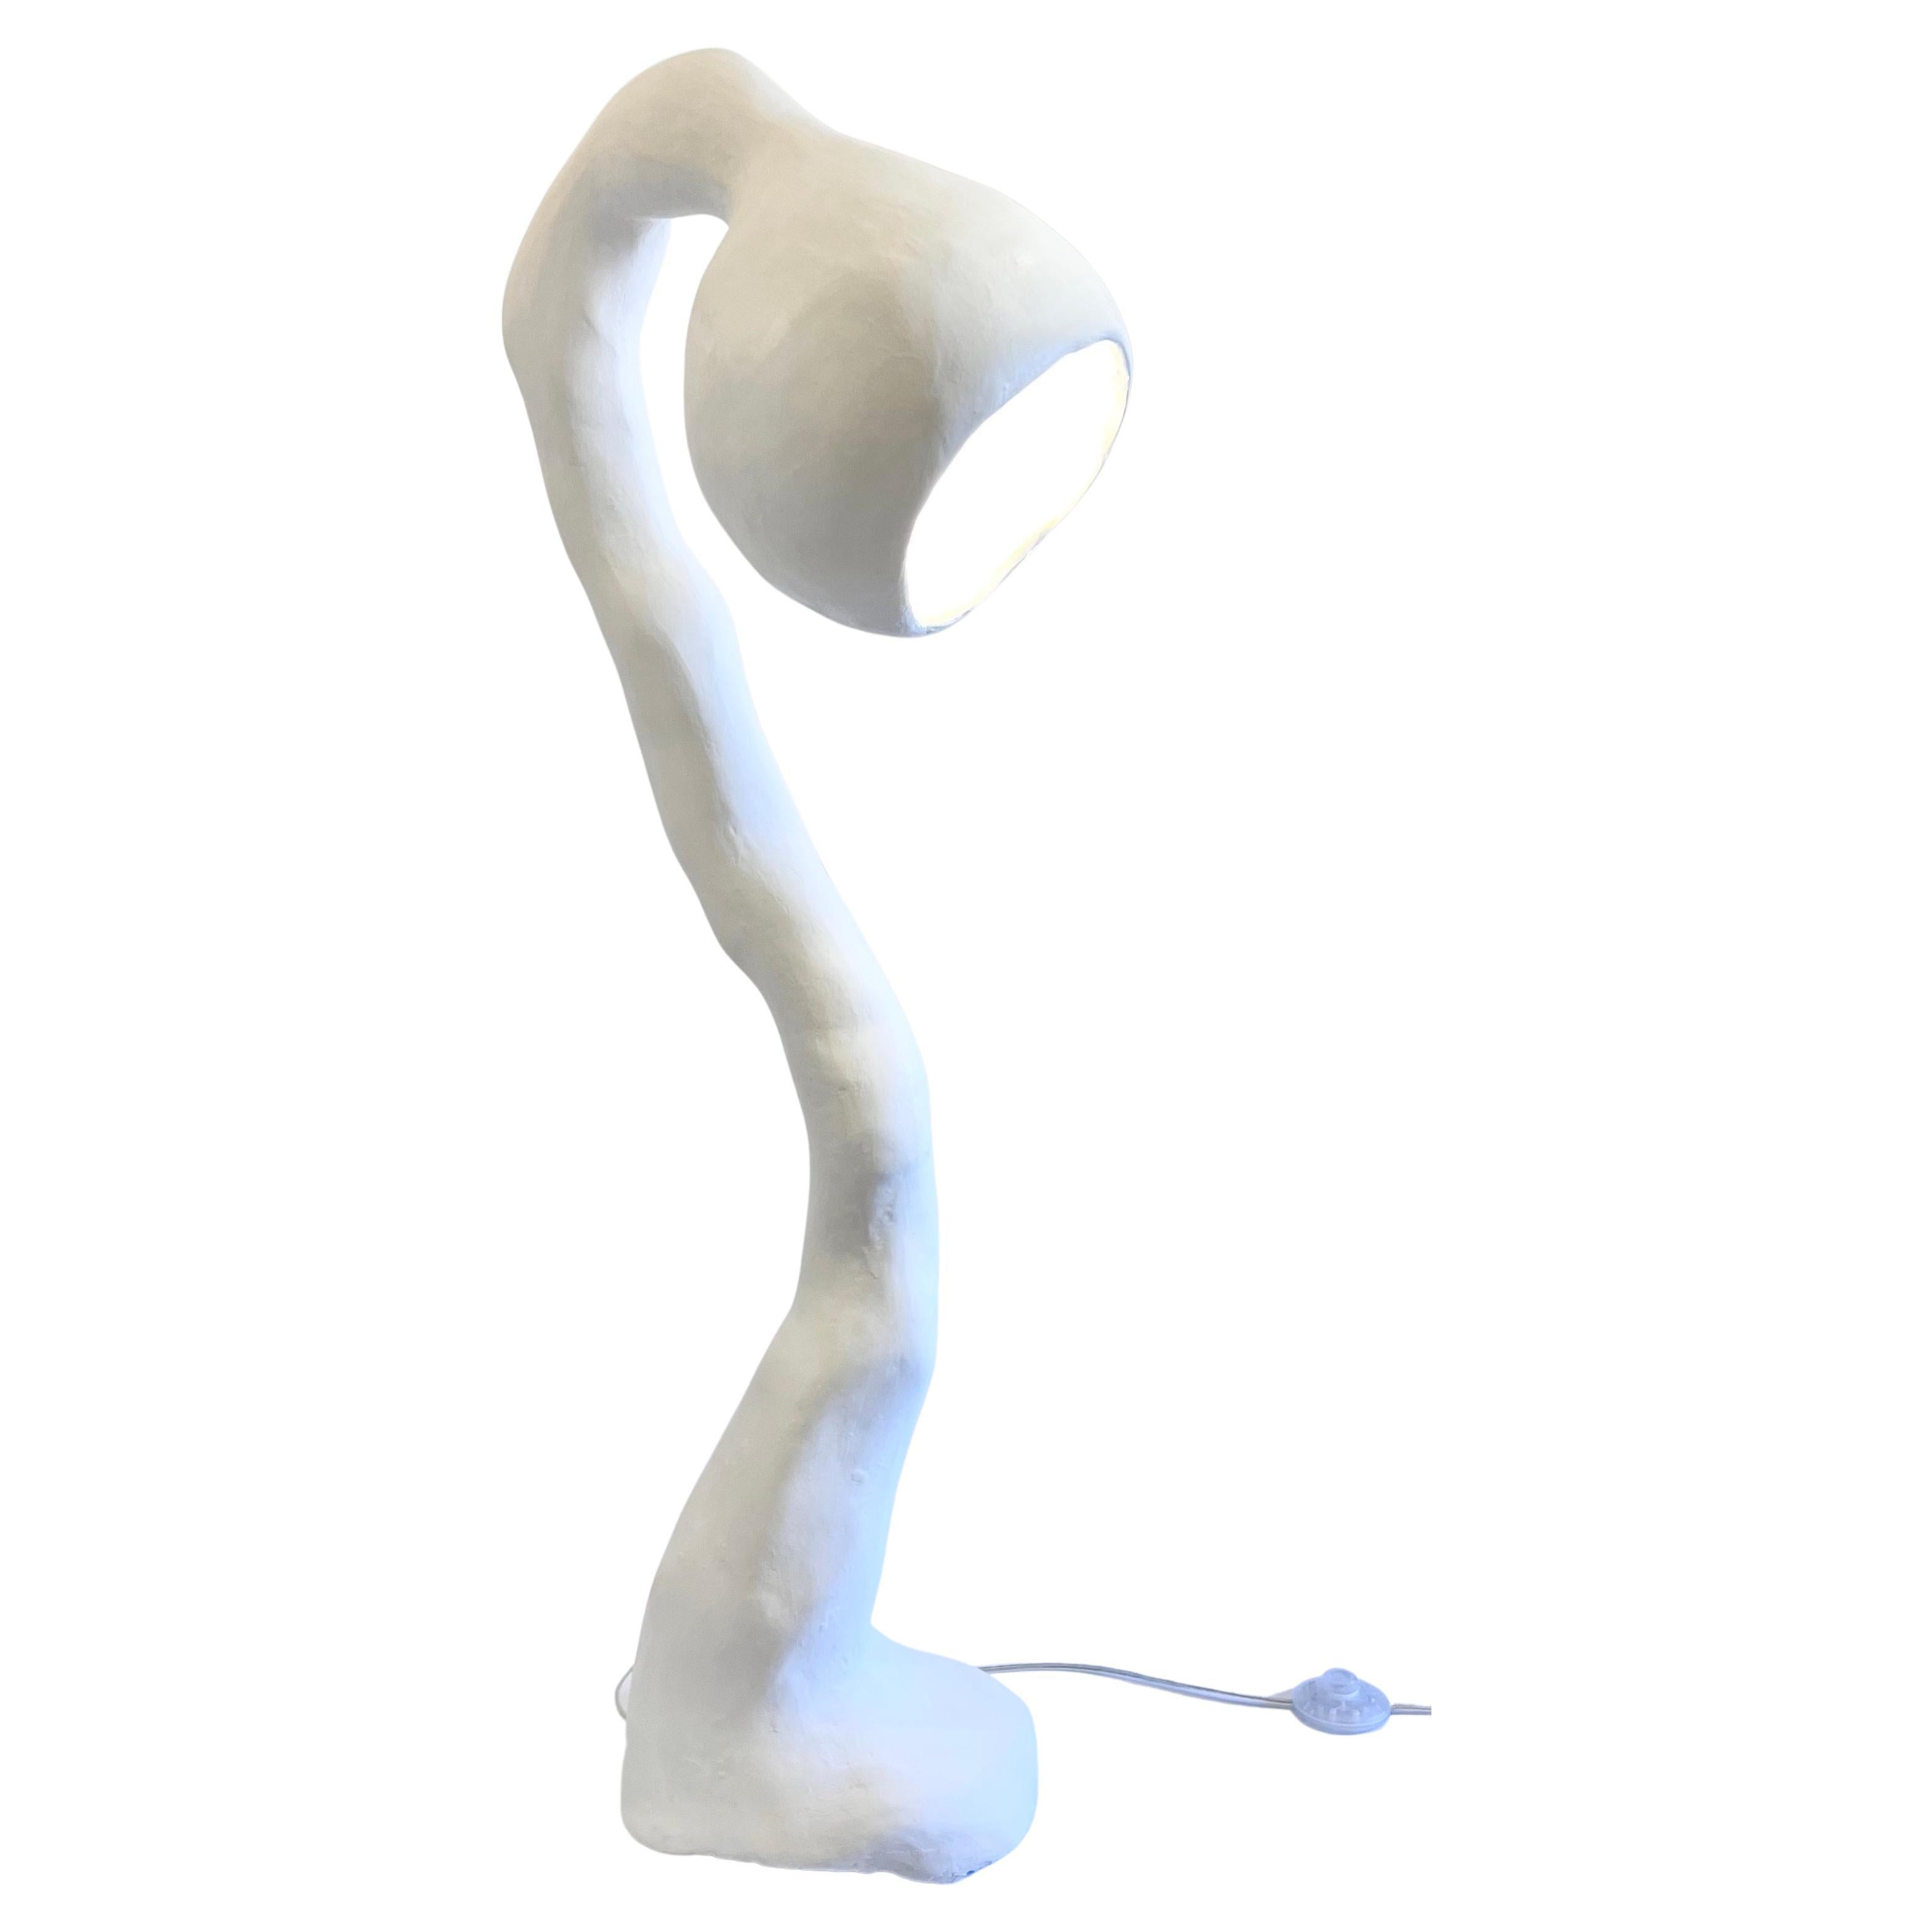 Le lampadaire N.004 de la série Biomorphic du Studio Chora s'inspire de la nature de l'expérience humaine. Il s'agit d'une sculpture lumineuse de deuxième génération, fabriquée à la main à partir d'une pierre composite à base de plâtre. Le composite